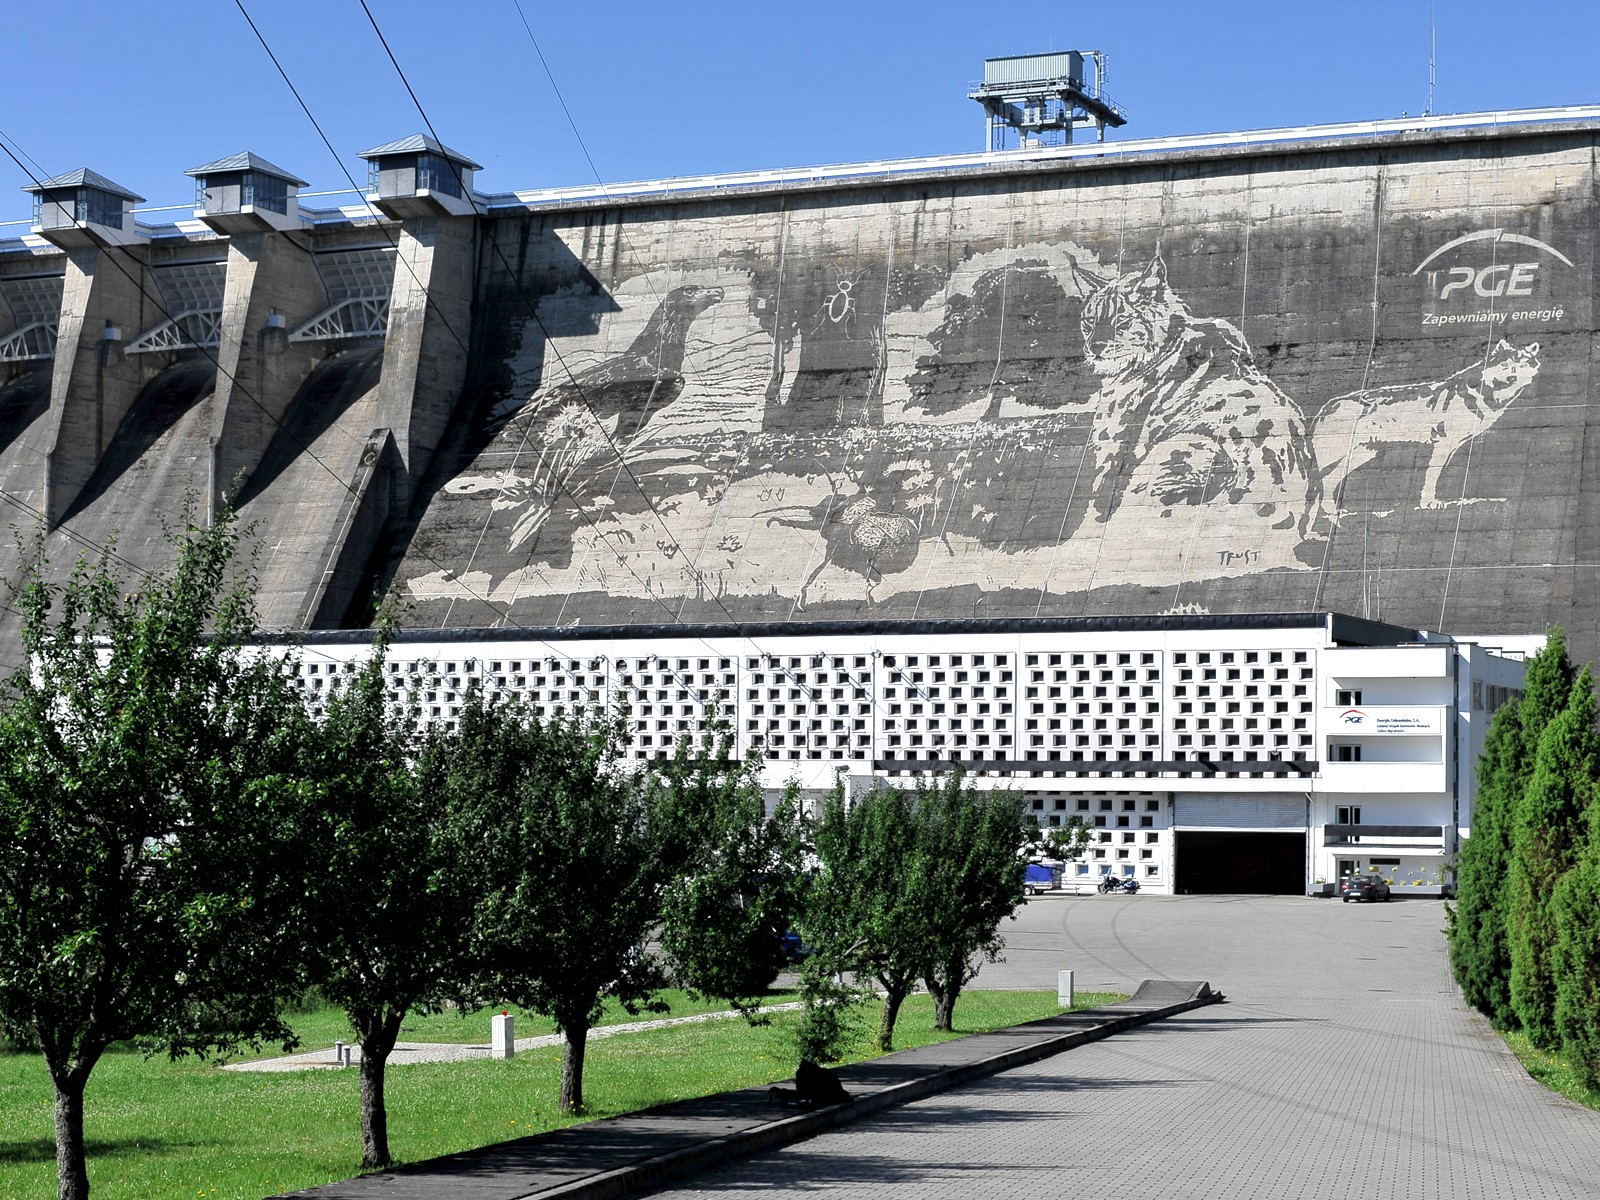 Öko-Wandbild in Solina für Polnische Energiegruppe | Öko-Mural - Clean Graffiti | Portfolio